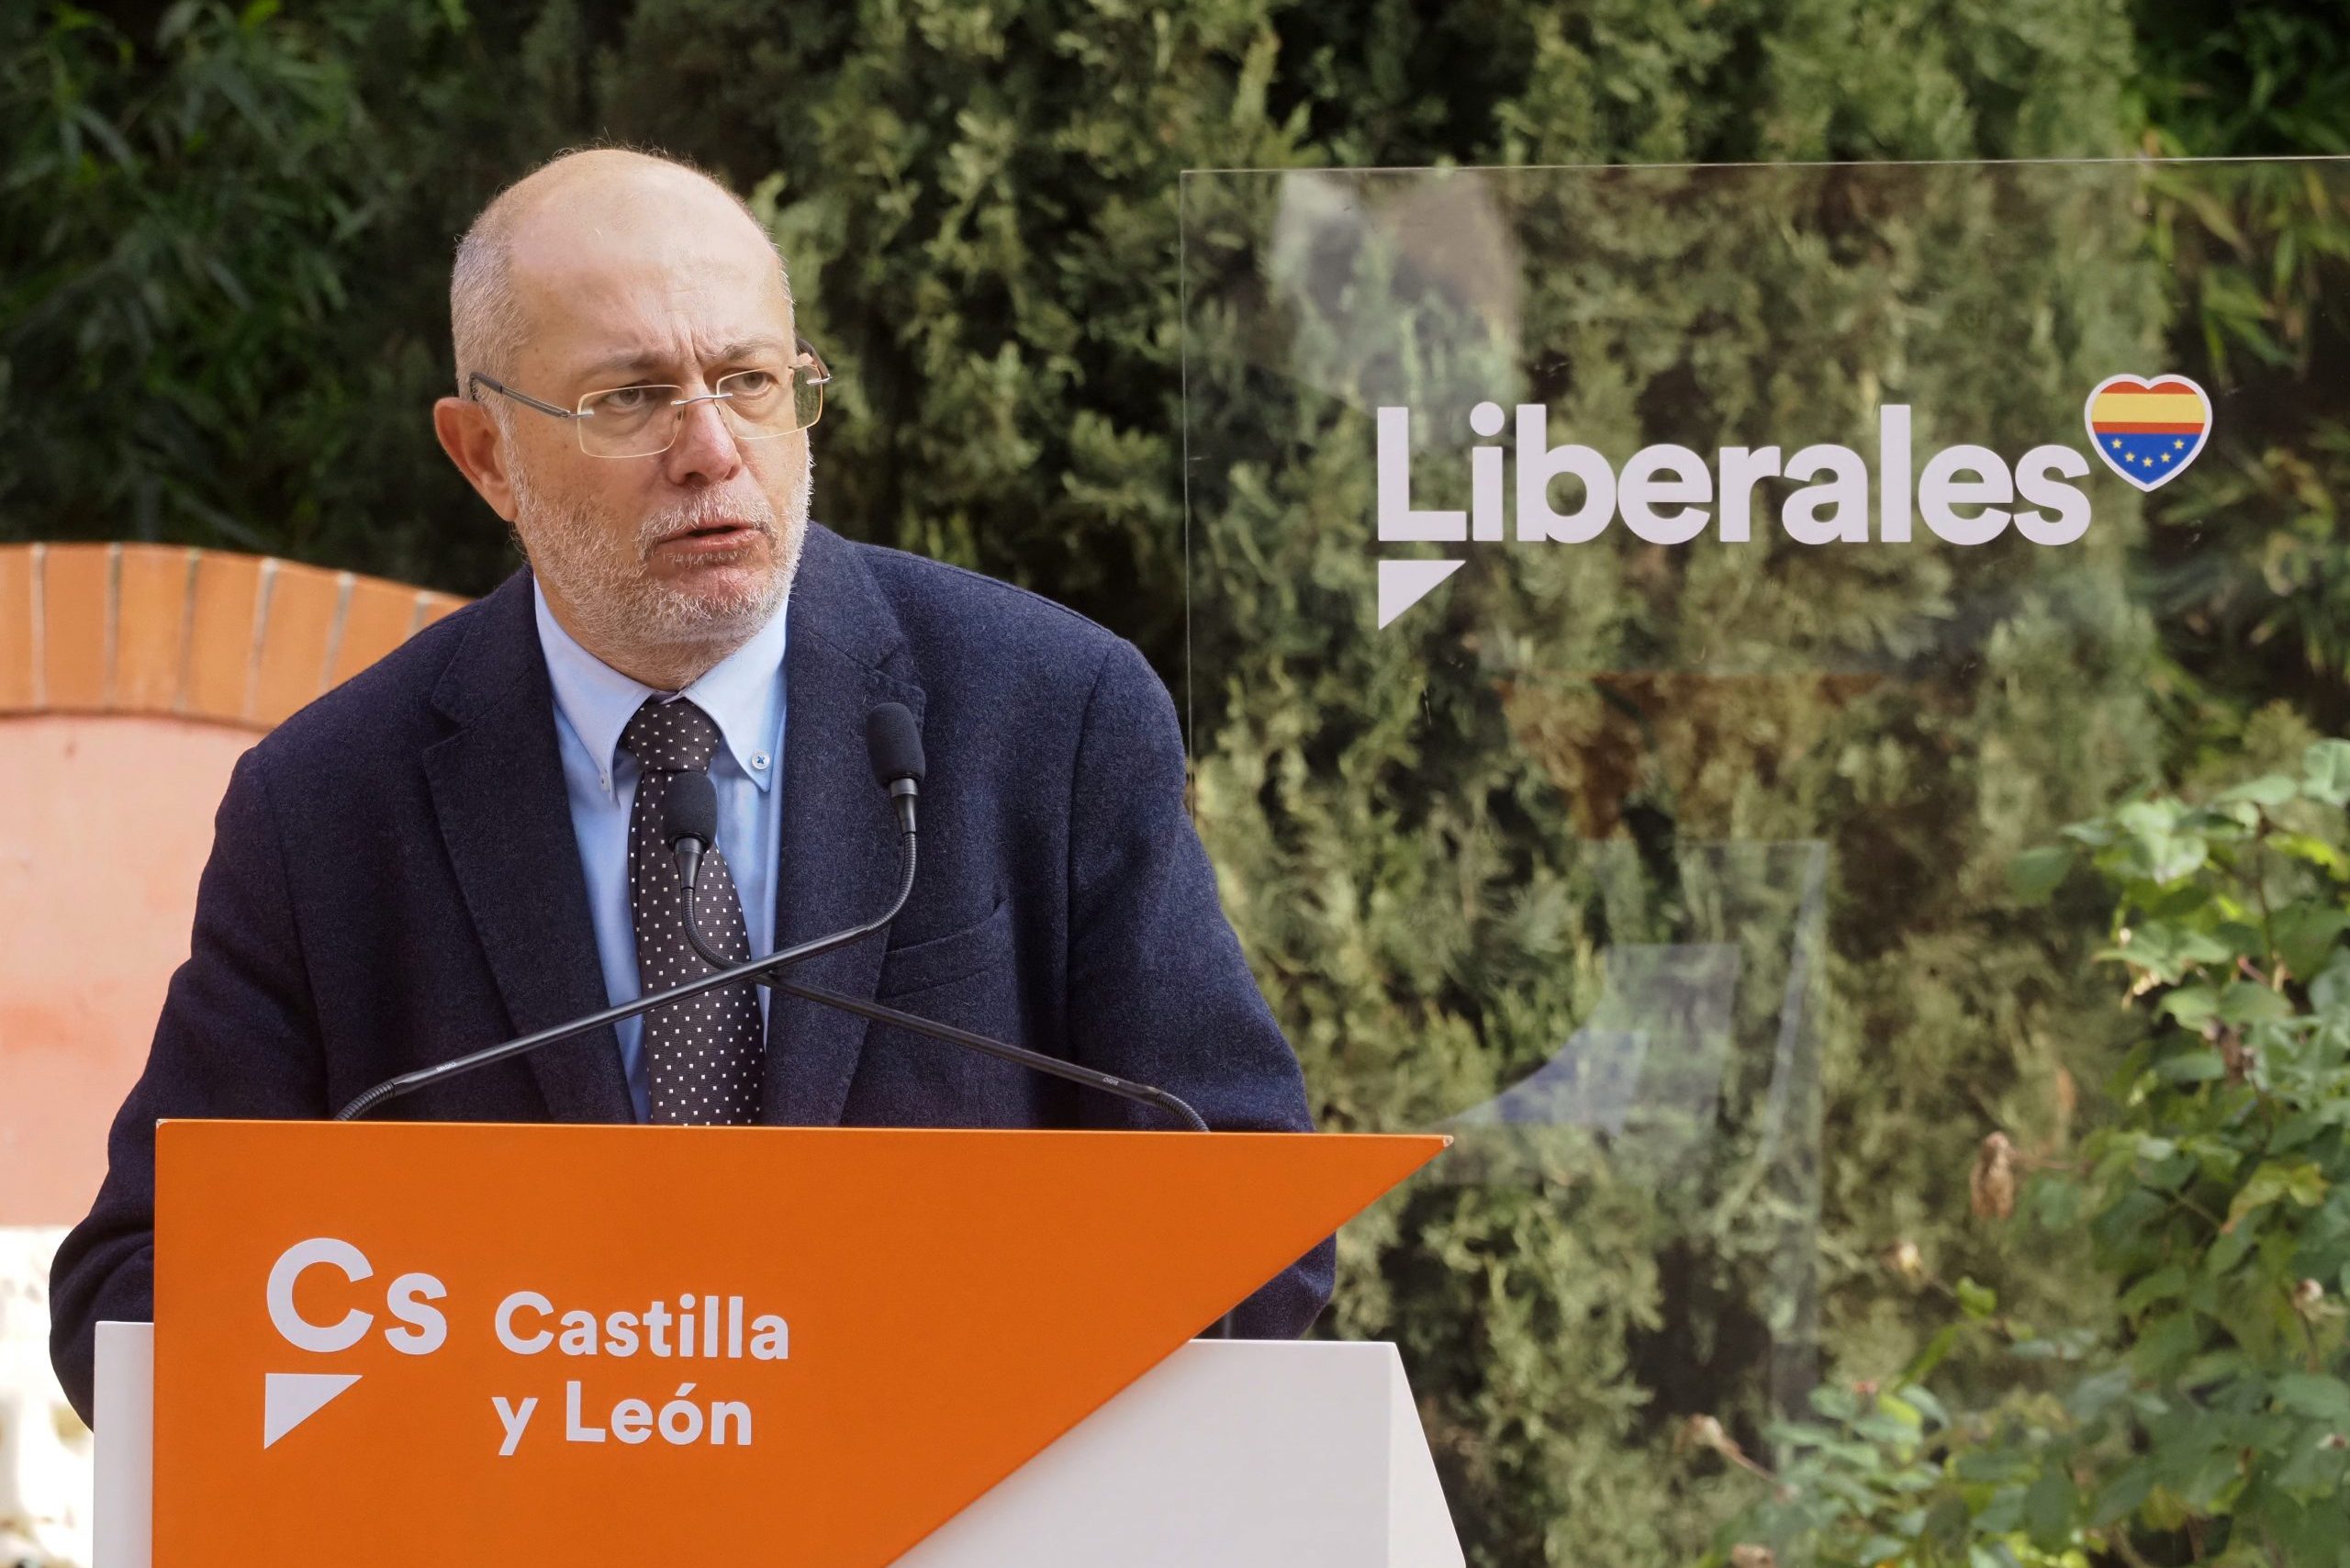 Igea promete en su programa que Castilla y León tendrá el IRPF más bajo de España